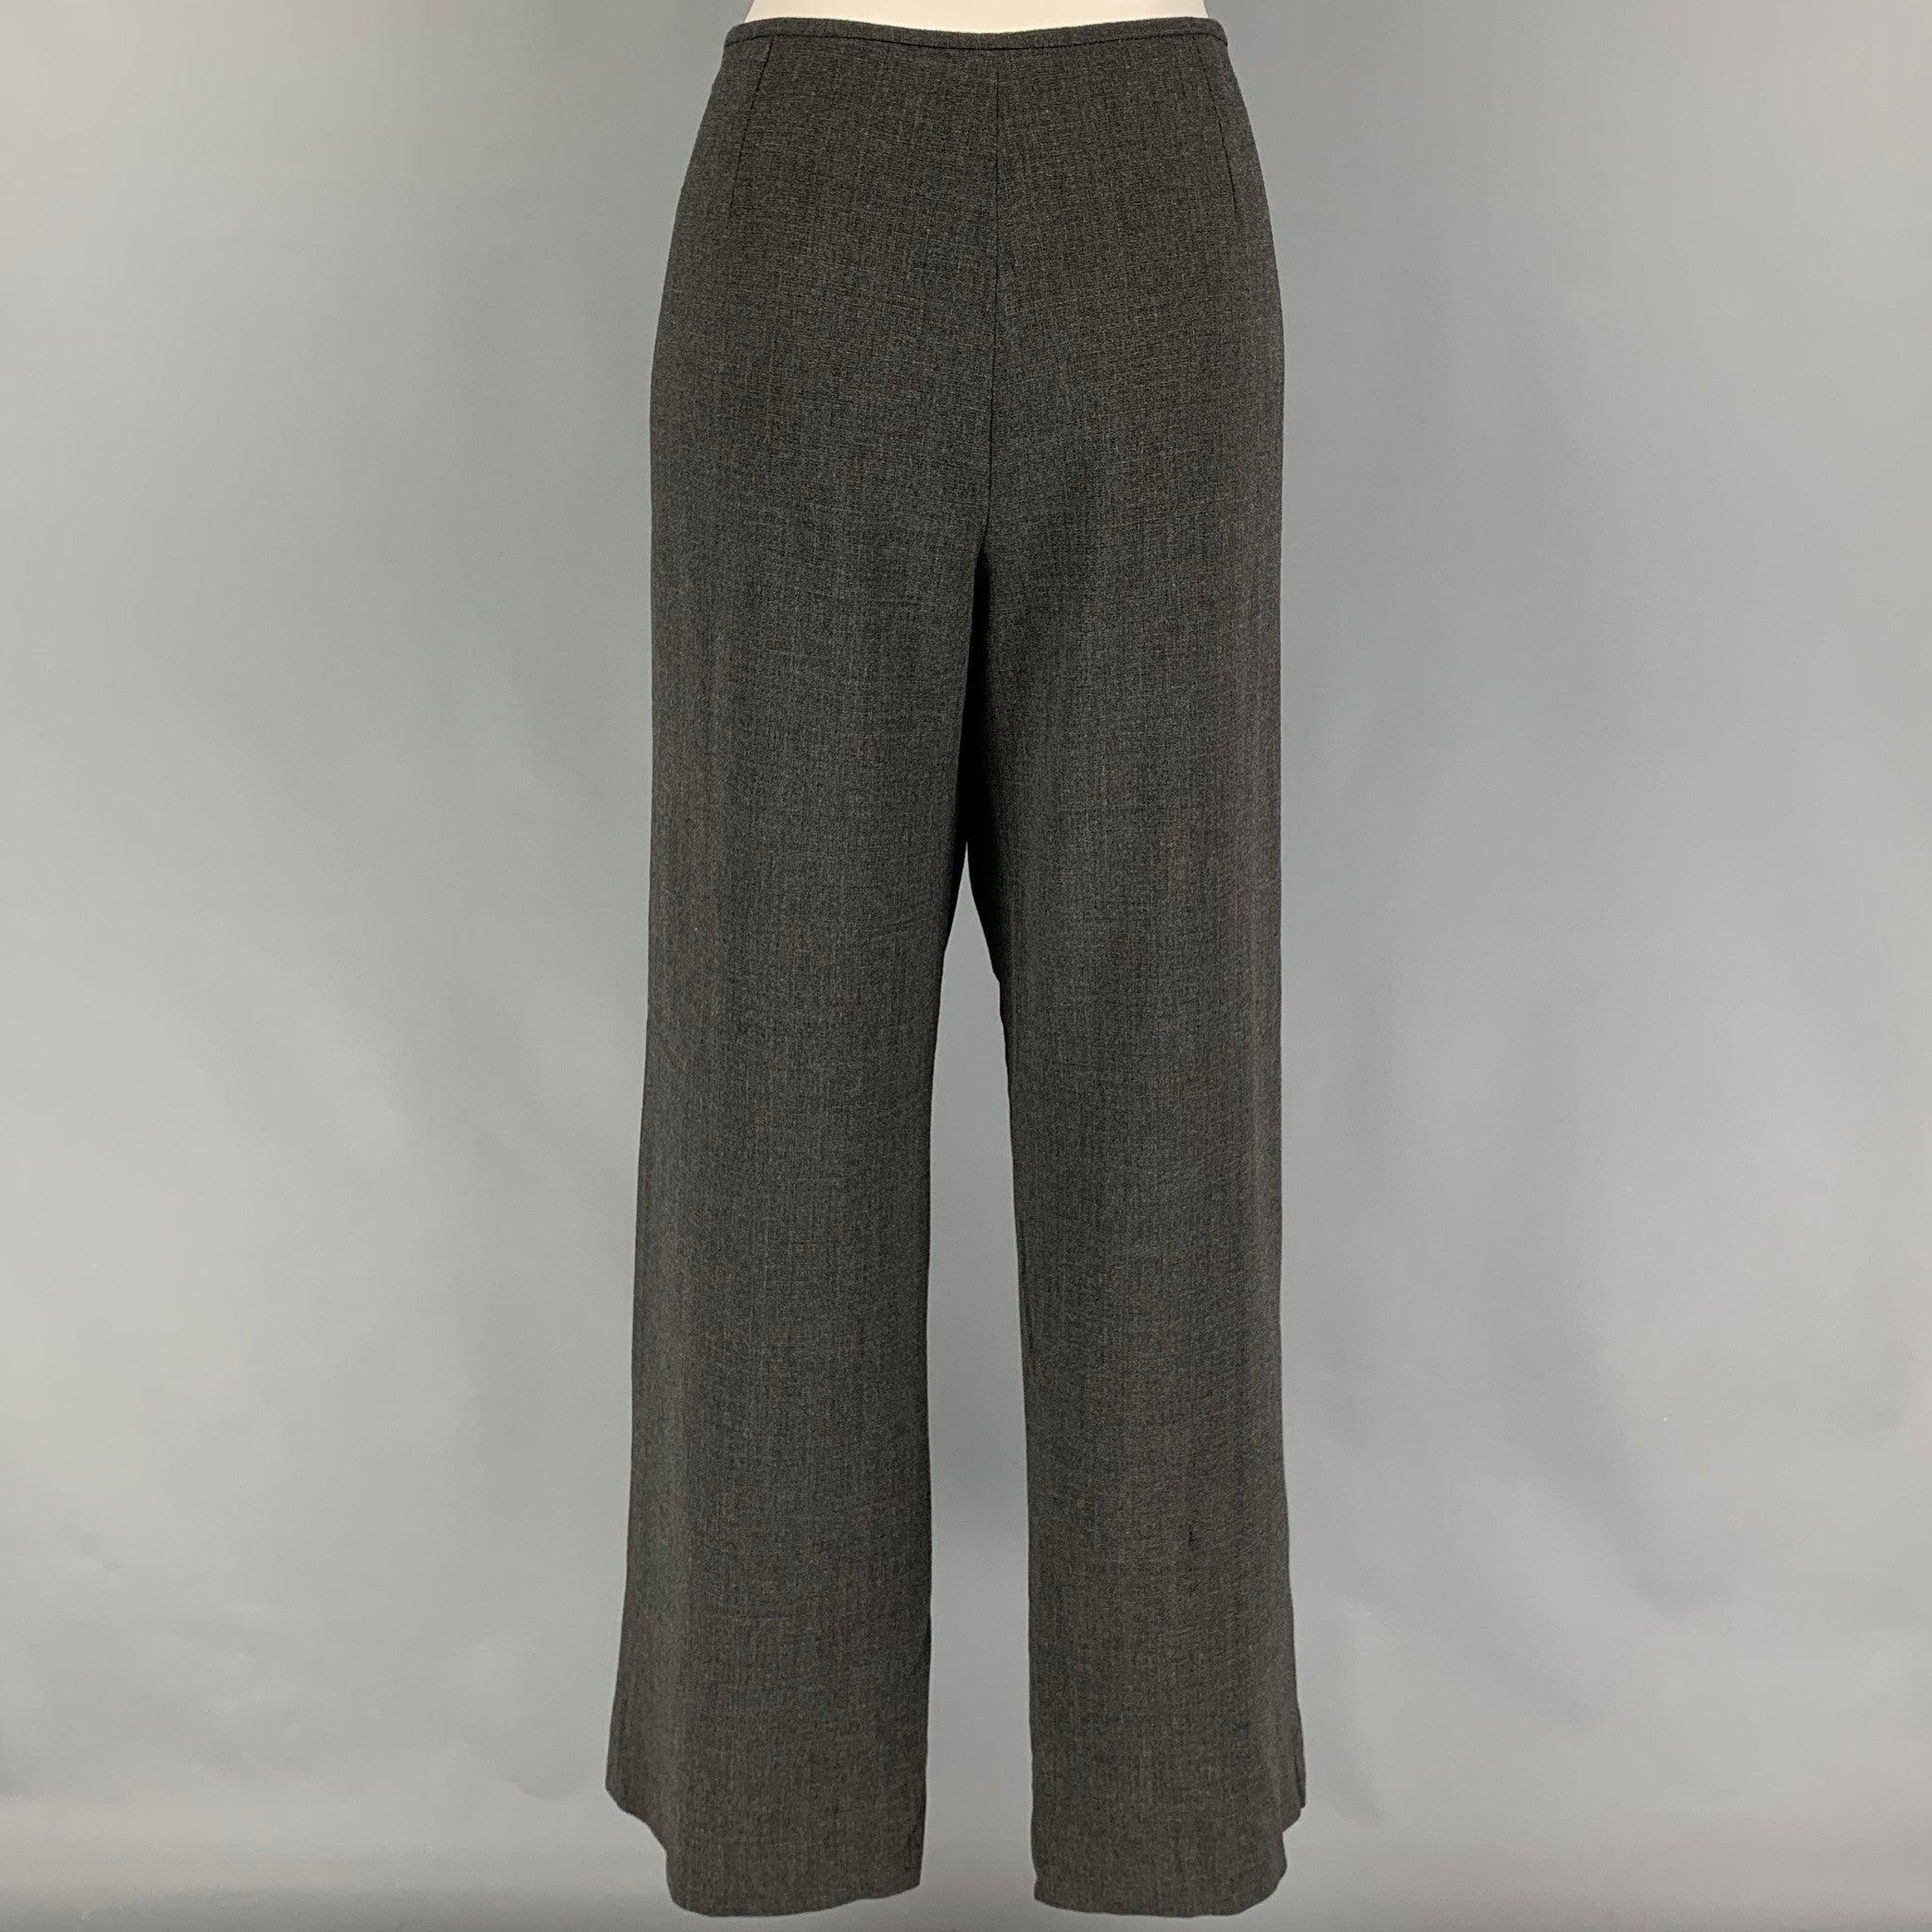 Le pantalon ARMANI COLLEZIONI se présente dans un tissu gris en laine et polyamide, avec une taille basse et une fermeture à glissière sur le côté. Fabriquées en Italie.
Très bien
Etat d'occasion. 

Marqué :  12 

Mesures : 
 Taille : 34 pouces